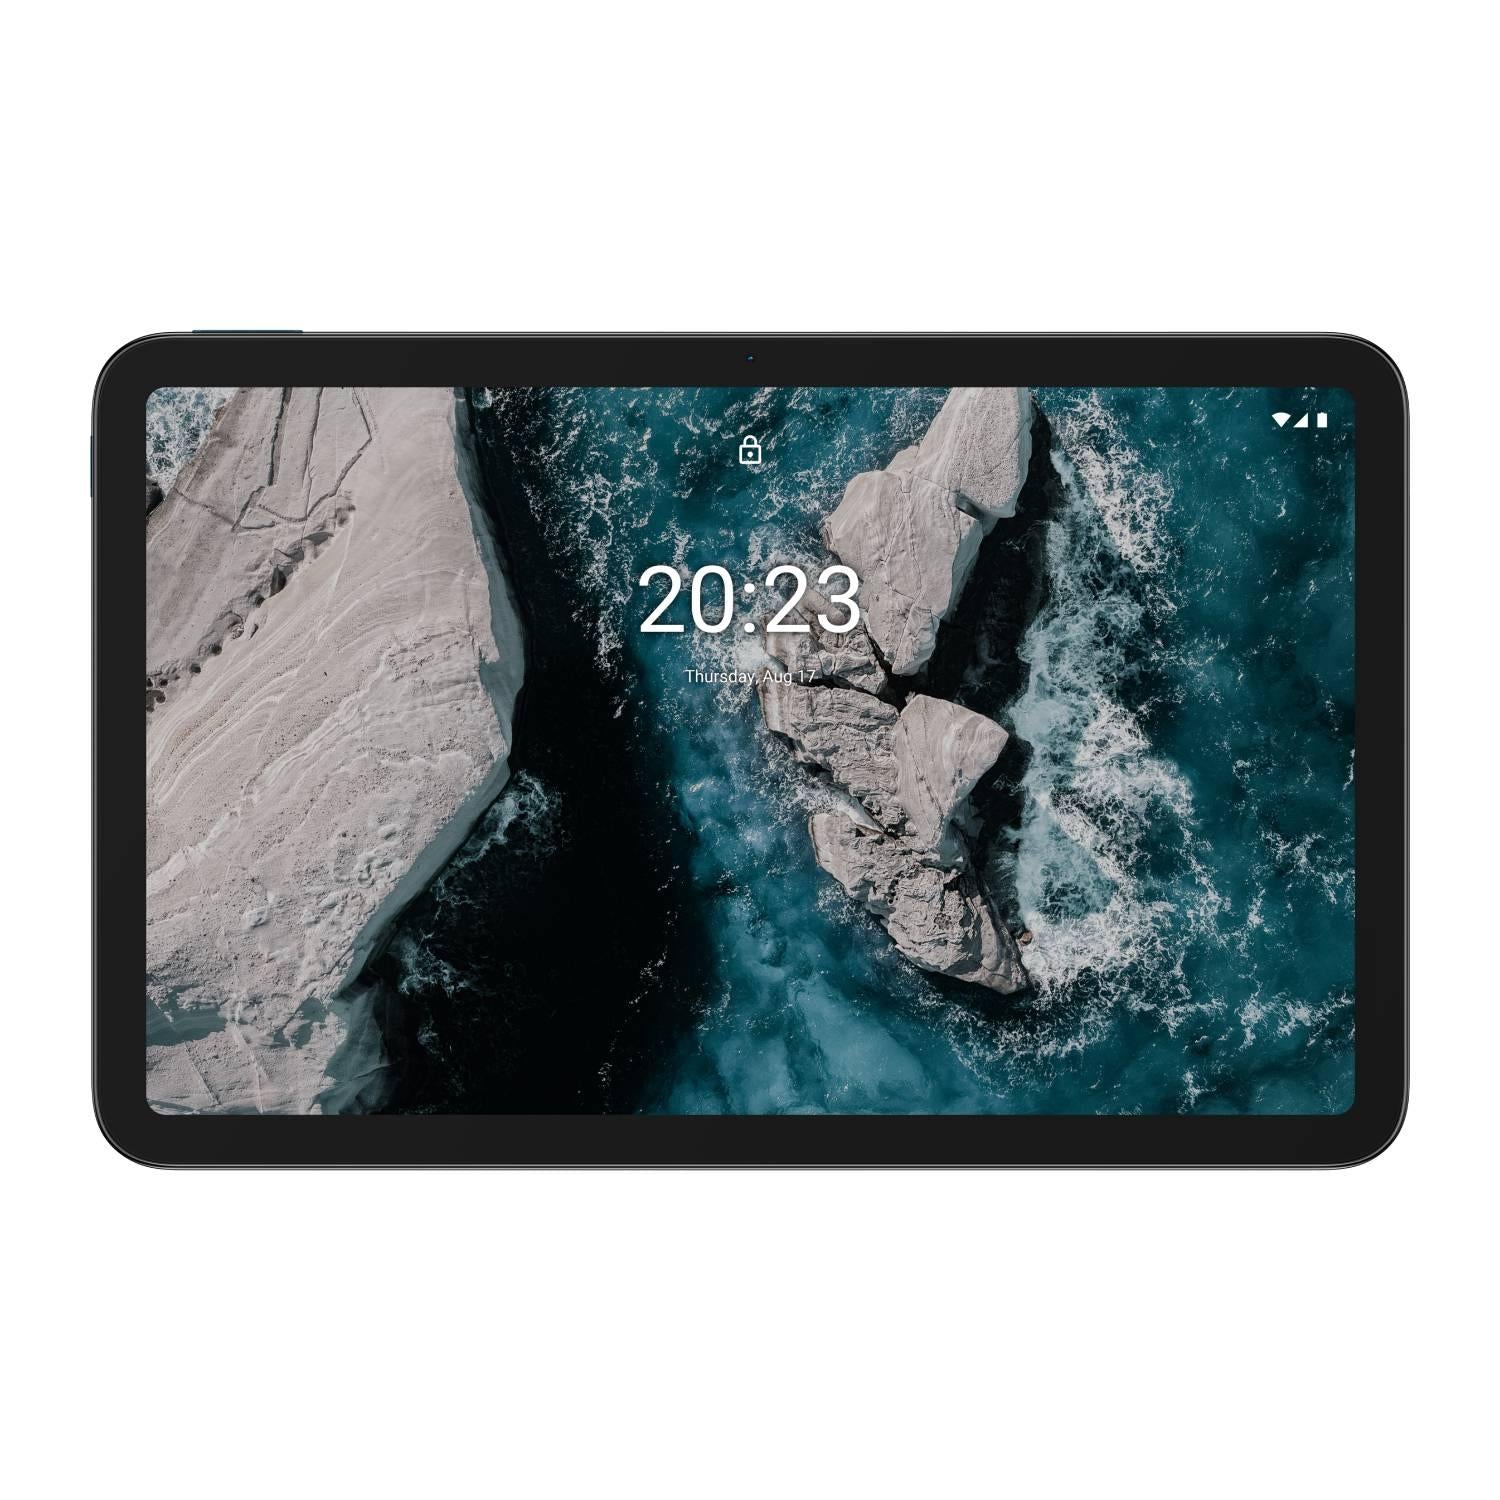 Nokia T20 Tablet 10.4inch 64GB 4GB RAM Wi-Fi - Deep Ocean